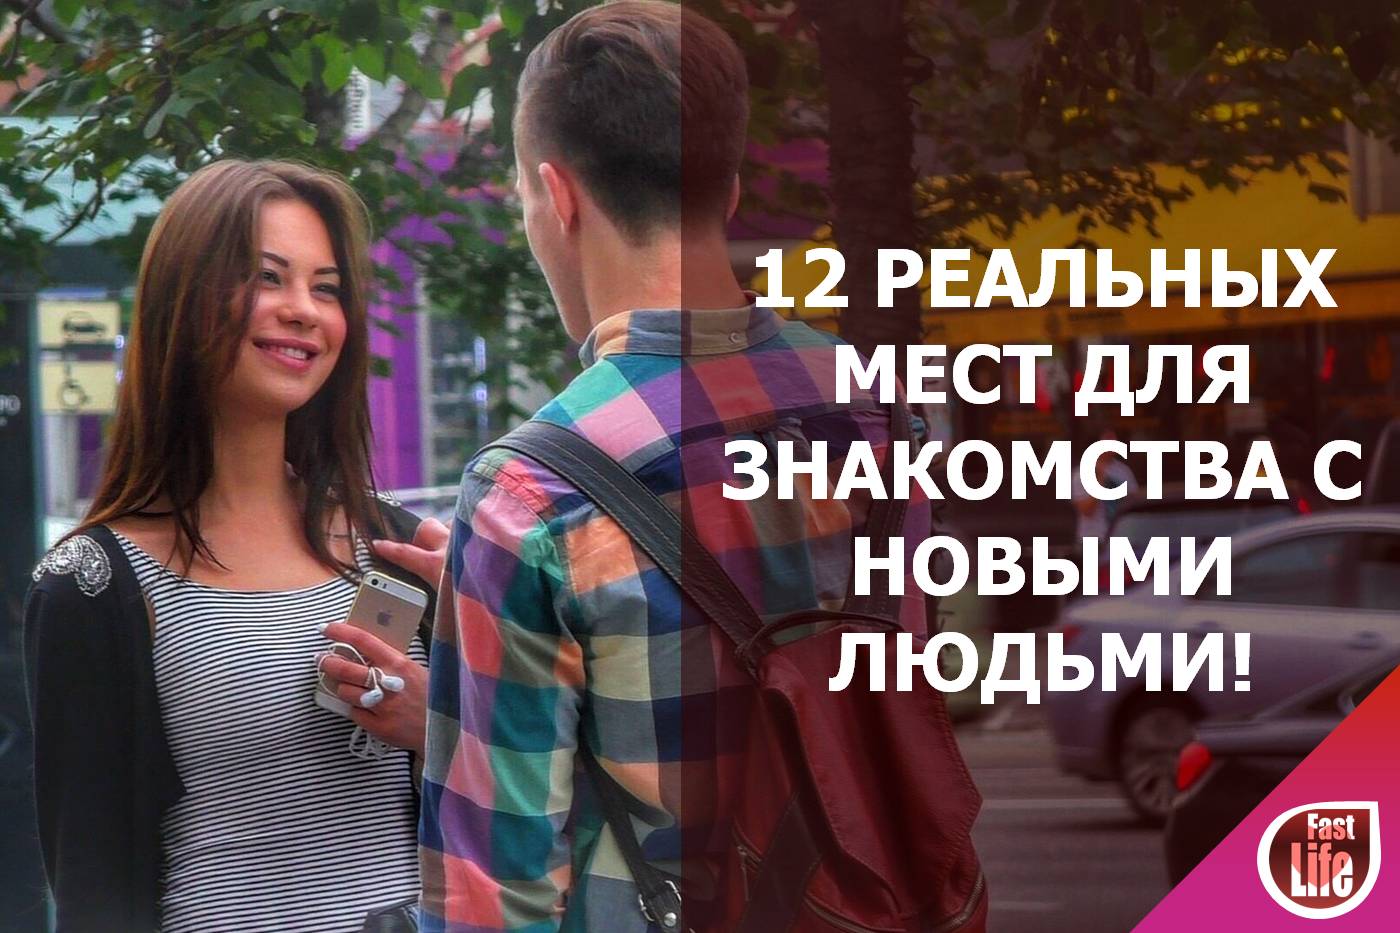 Алгоритм успешного знакомства в Москве